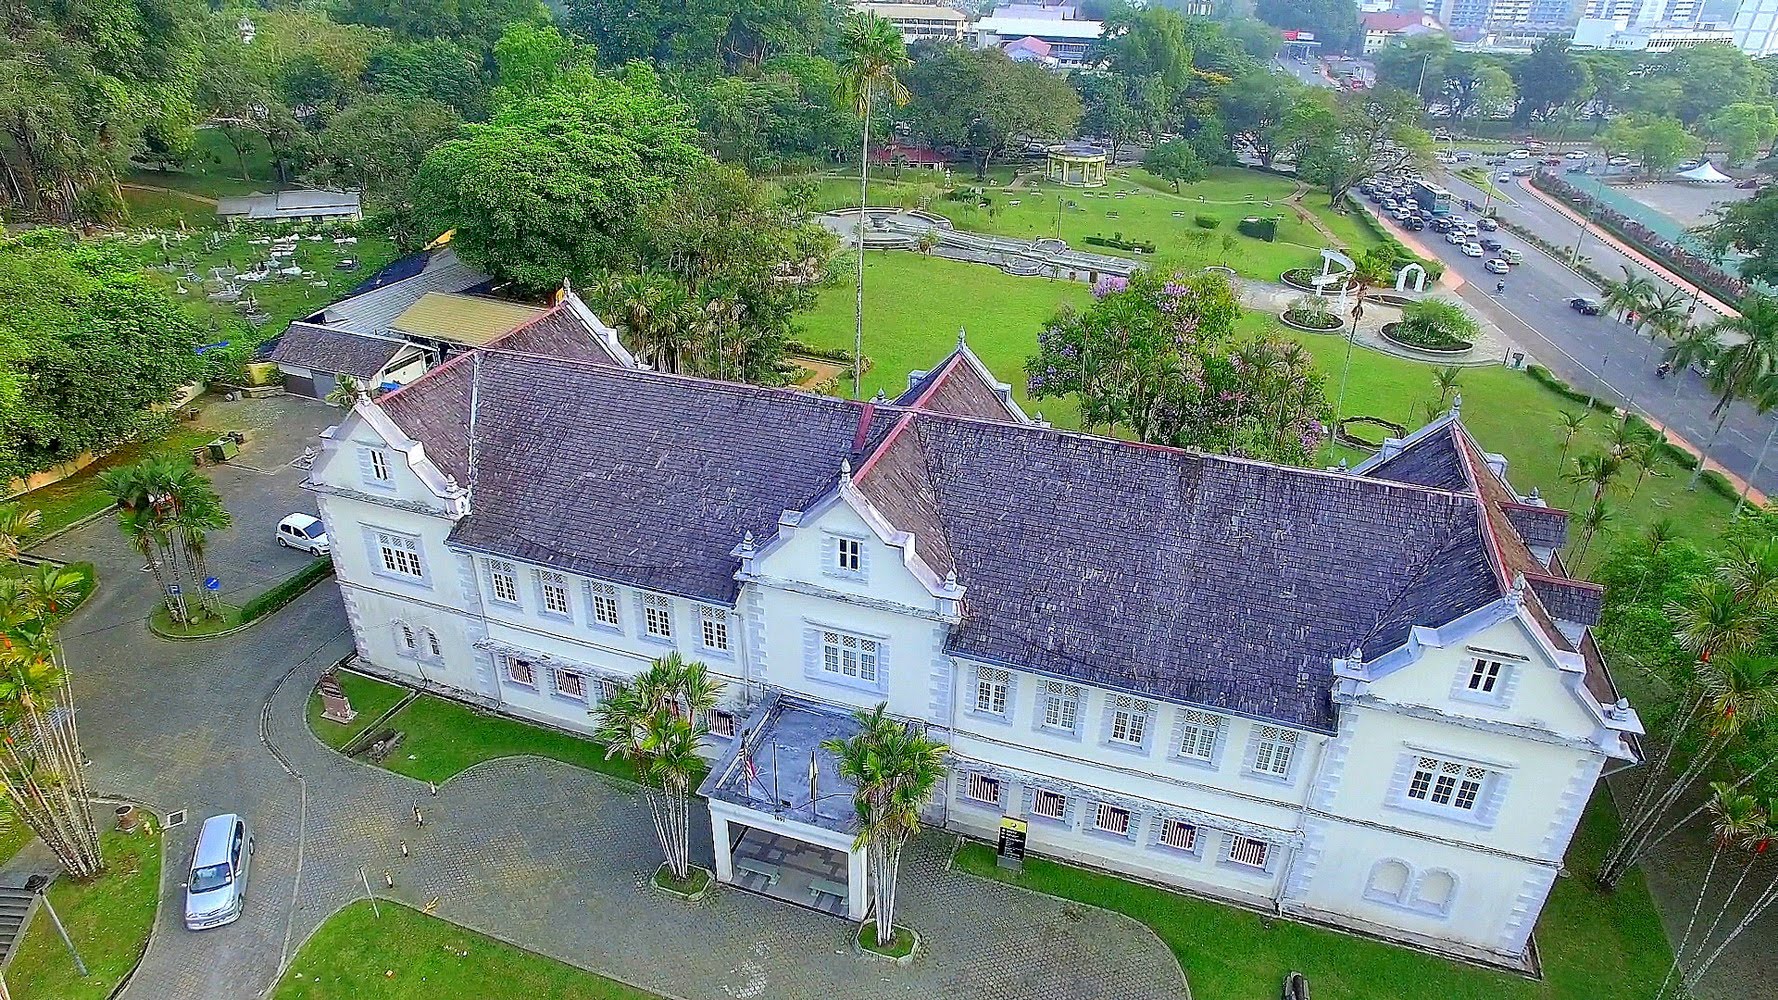 Sarawak Museum vốn là một trong những bảo tàng tốt nhất ở châu Á, với các hiện vật trưng bày về dân tộc, lịch sử thiên nhiên, các món đồ tạo tác của người Malaysia và đồ sứ Trung Hoa.